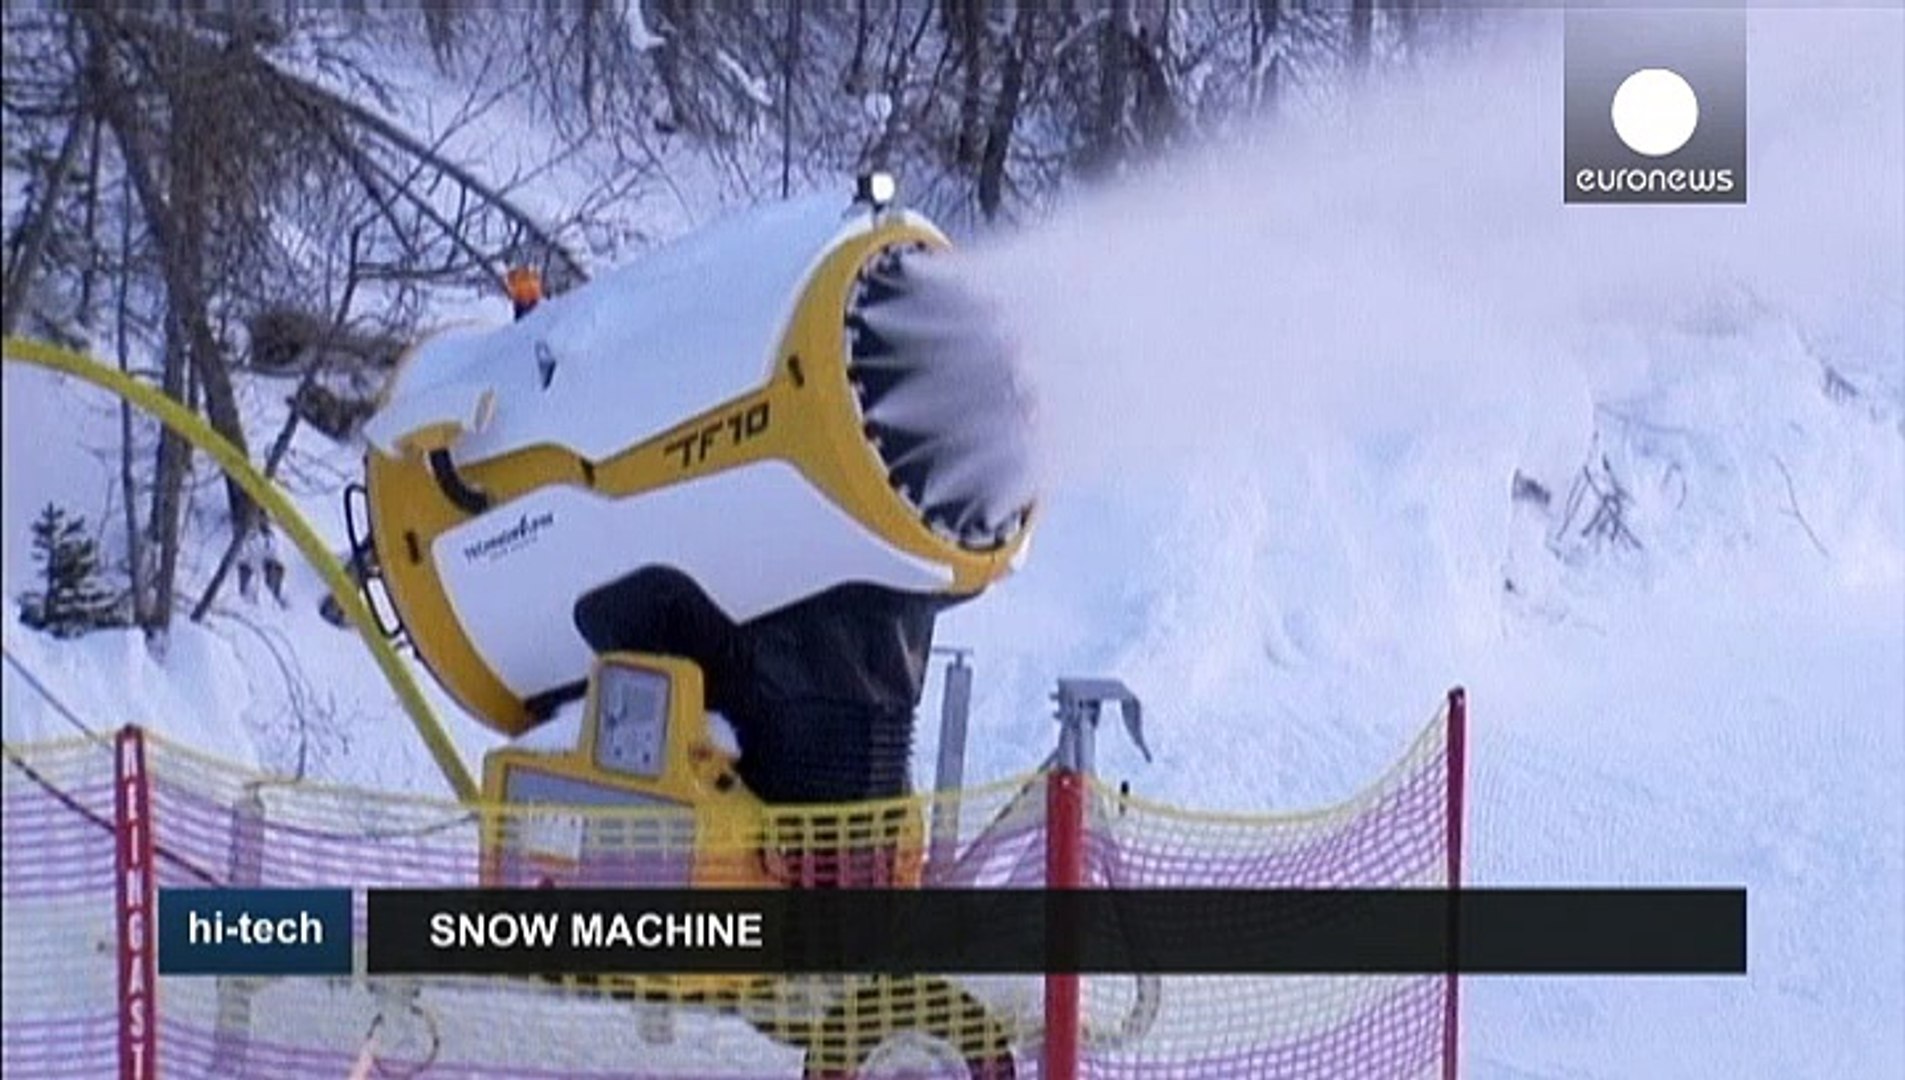 Il cannone che spara neve anche se ci sono 15 gradi - Video Dailymotion